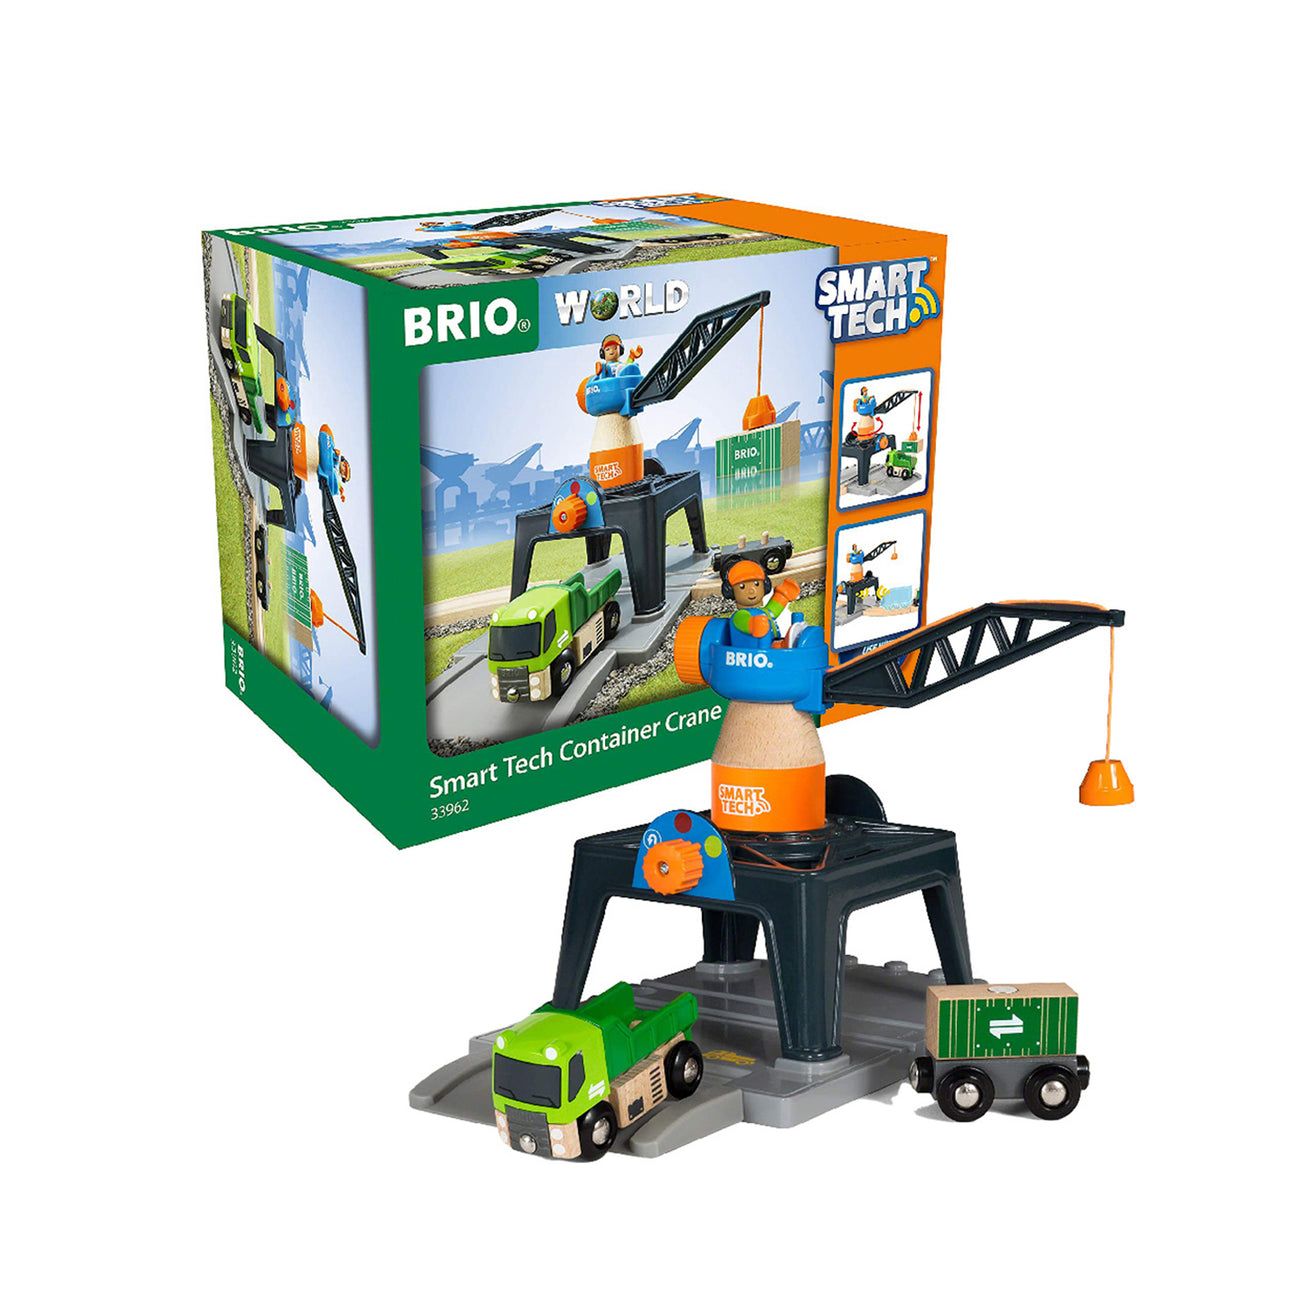 BRIO Smart Tech Farm Building Toys - 33936 – Smart Kiz